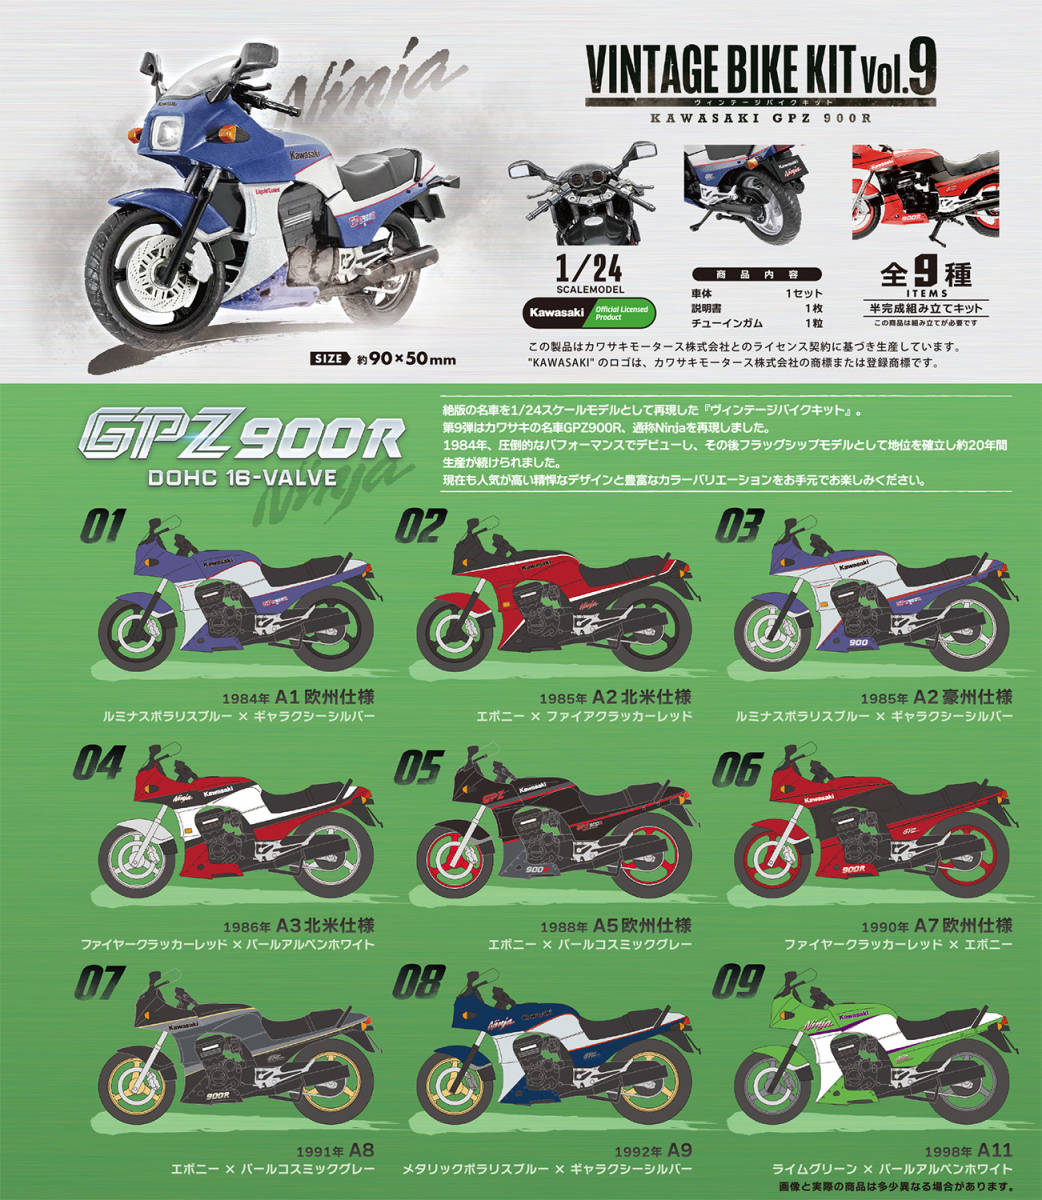 8 1992年 A9 メタリックポラリスブルー×ギャラクシーシルバー ヴィンテージバイクキット Vol.9 KAWASAKI GPZ 900R 1/24 ラスト1個_サンプル画像です